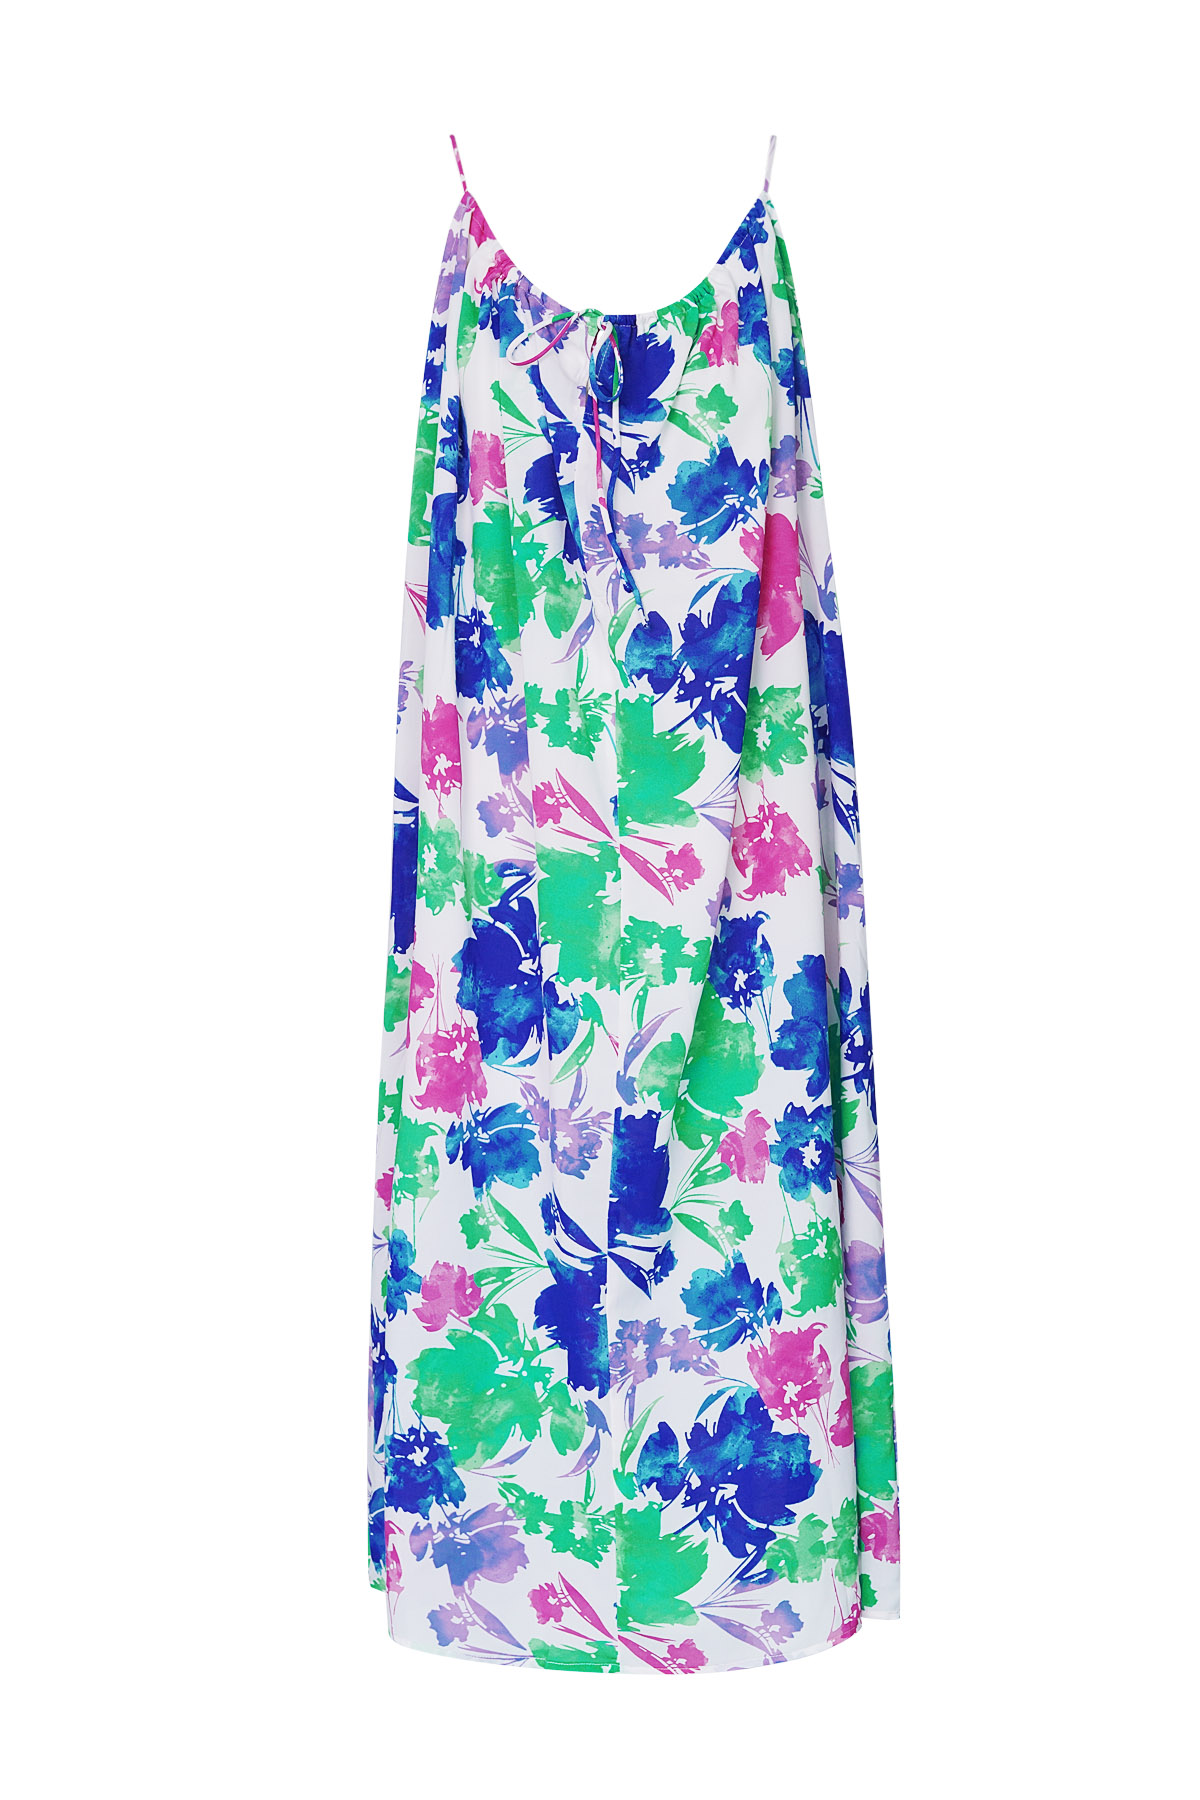 Kleid mit Blumendruck - grün/blau/rosa